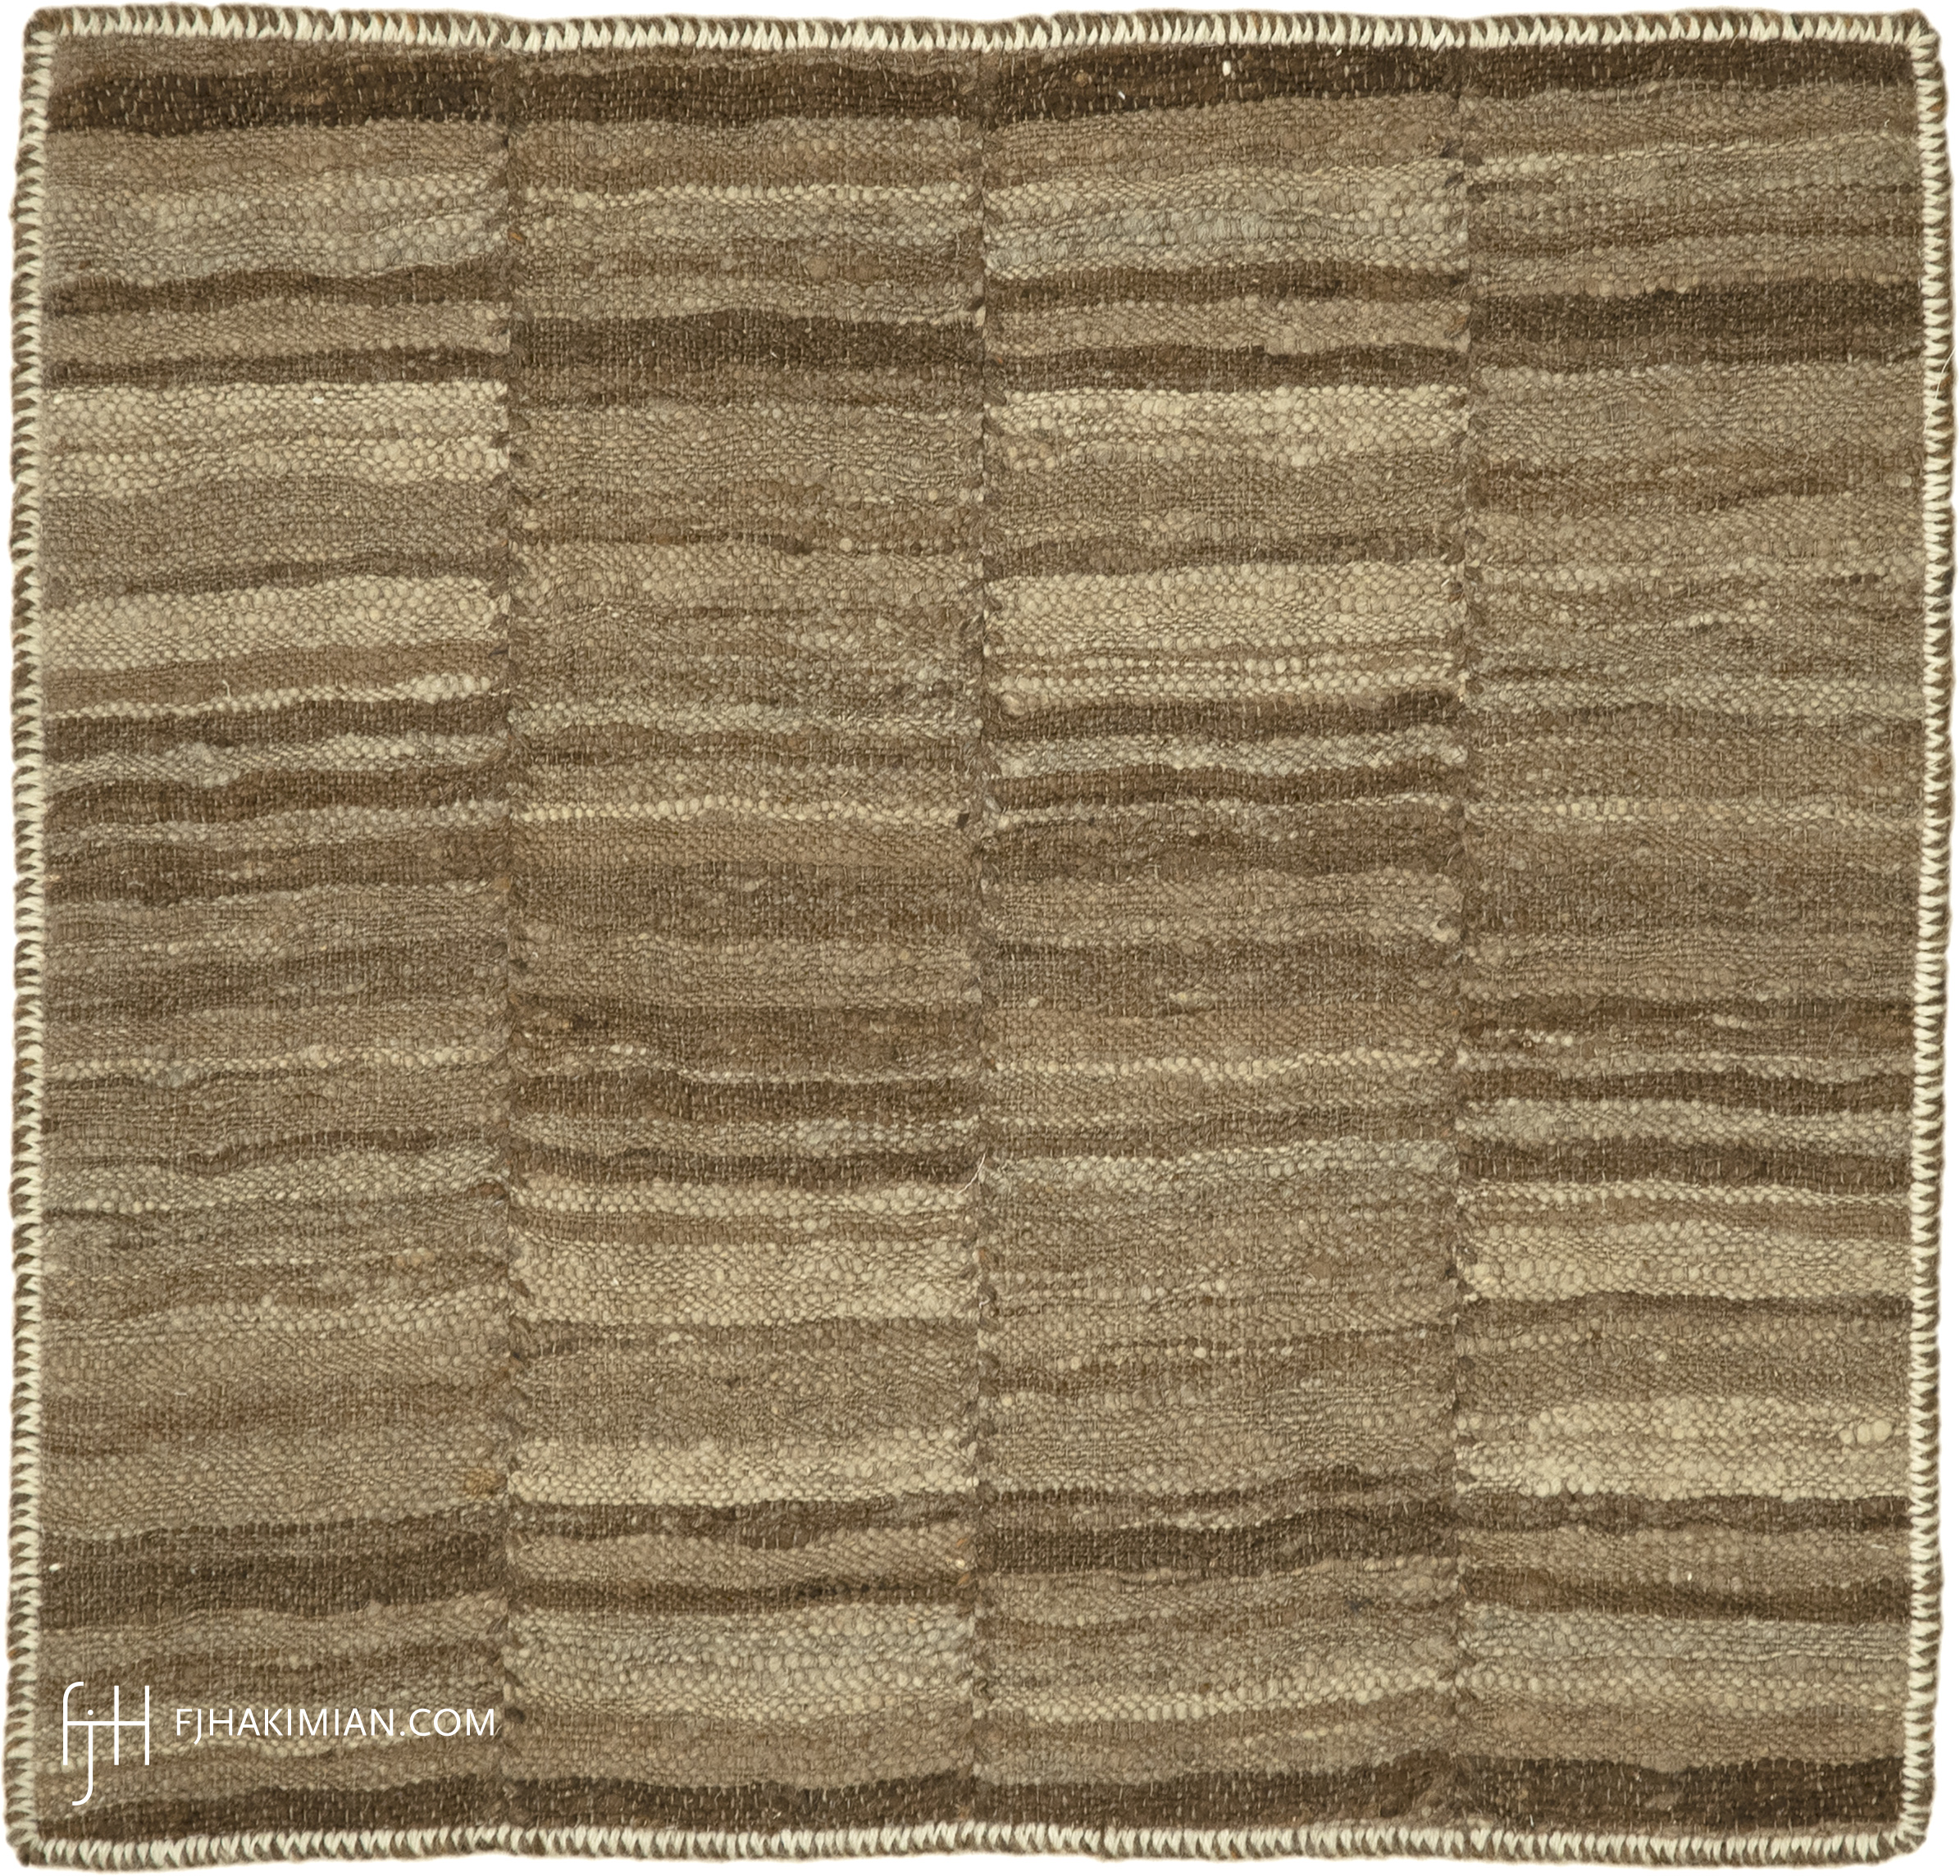 FJ Hakimian | 77161 | Custom Carpet